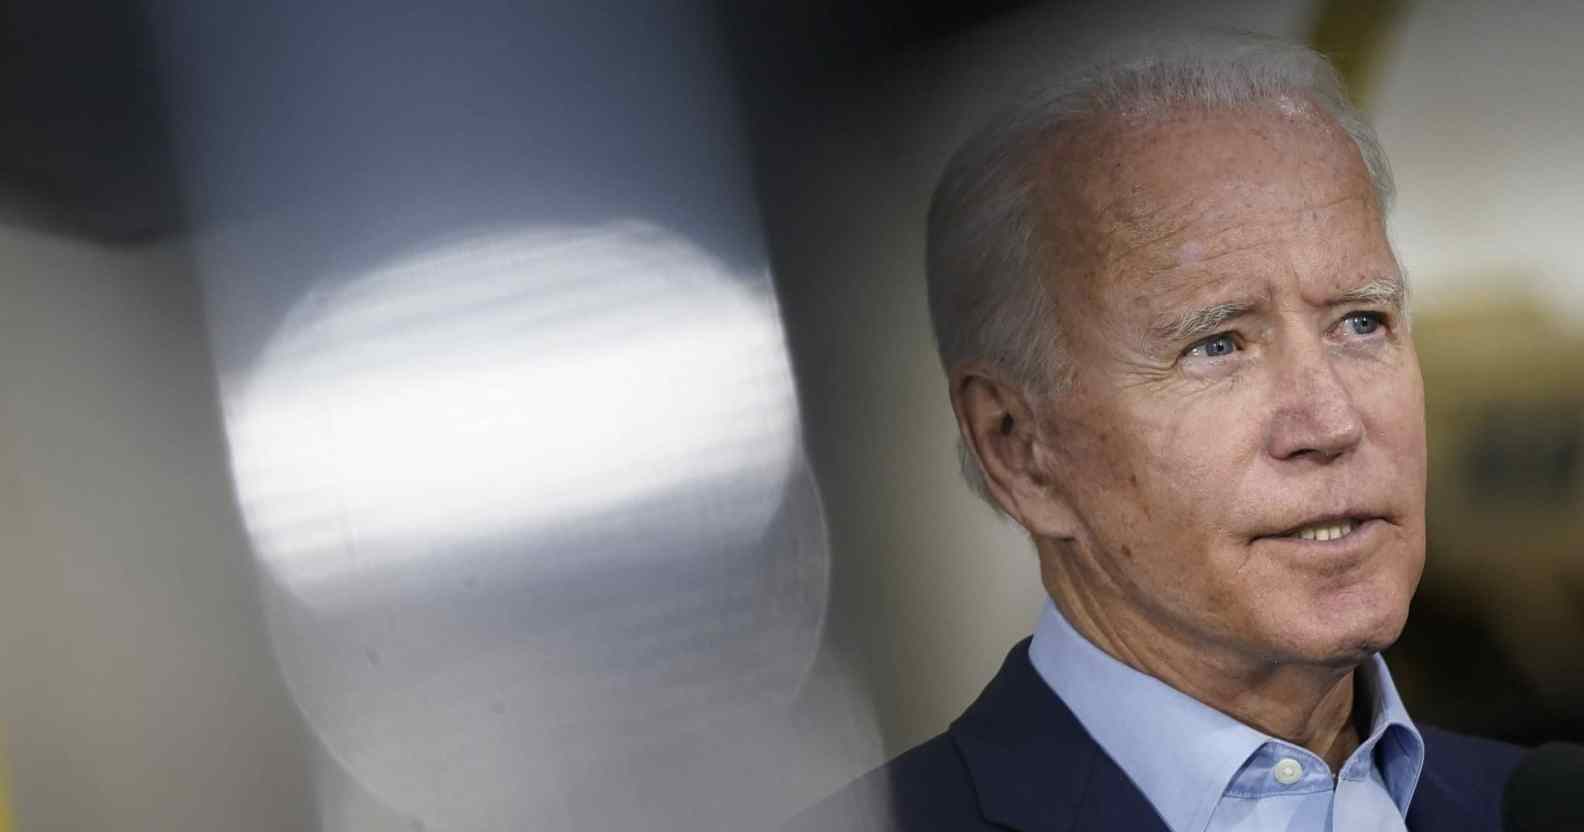 Joe Biden in a light blue shirt and dark suit